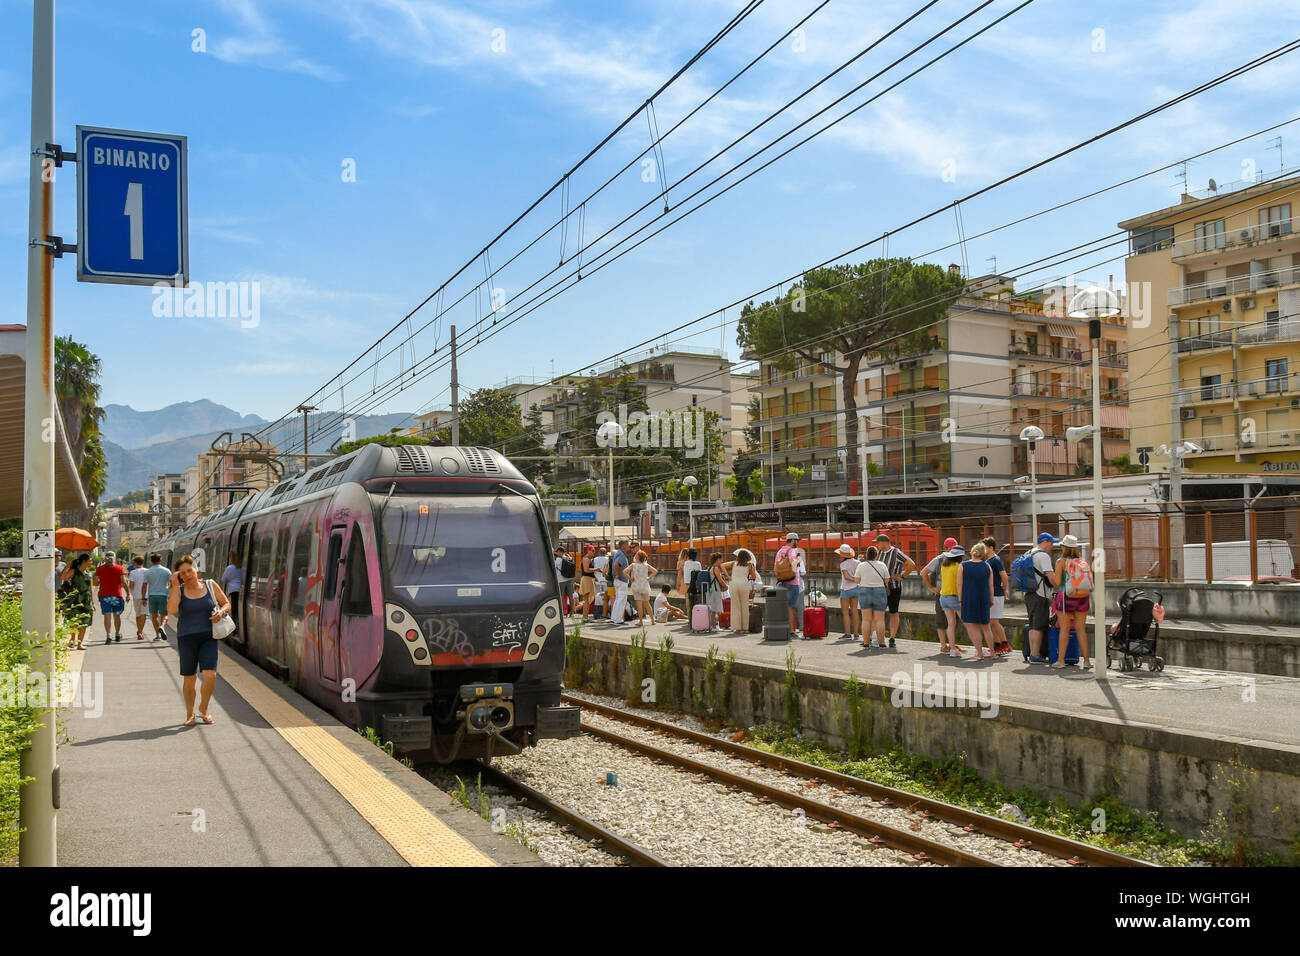 SORRENTO, ITALIEN - AUGUST 2019: Zug im Bahnhof und Masse von Warten auf einen Zug auf einer Plattform an Sorrento Bahnhof ankommen. Stockfoto